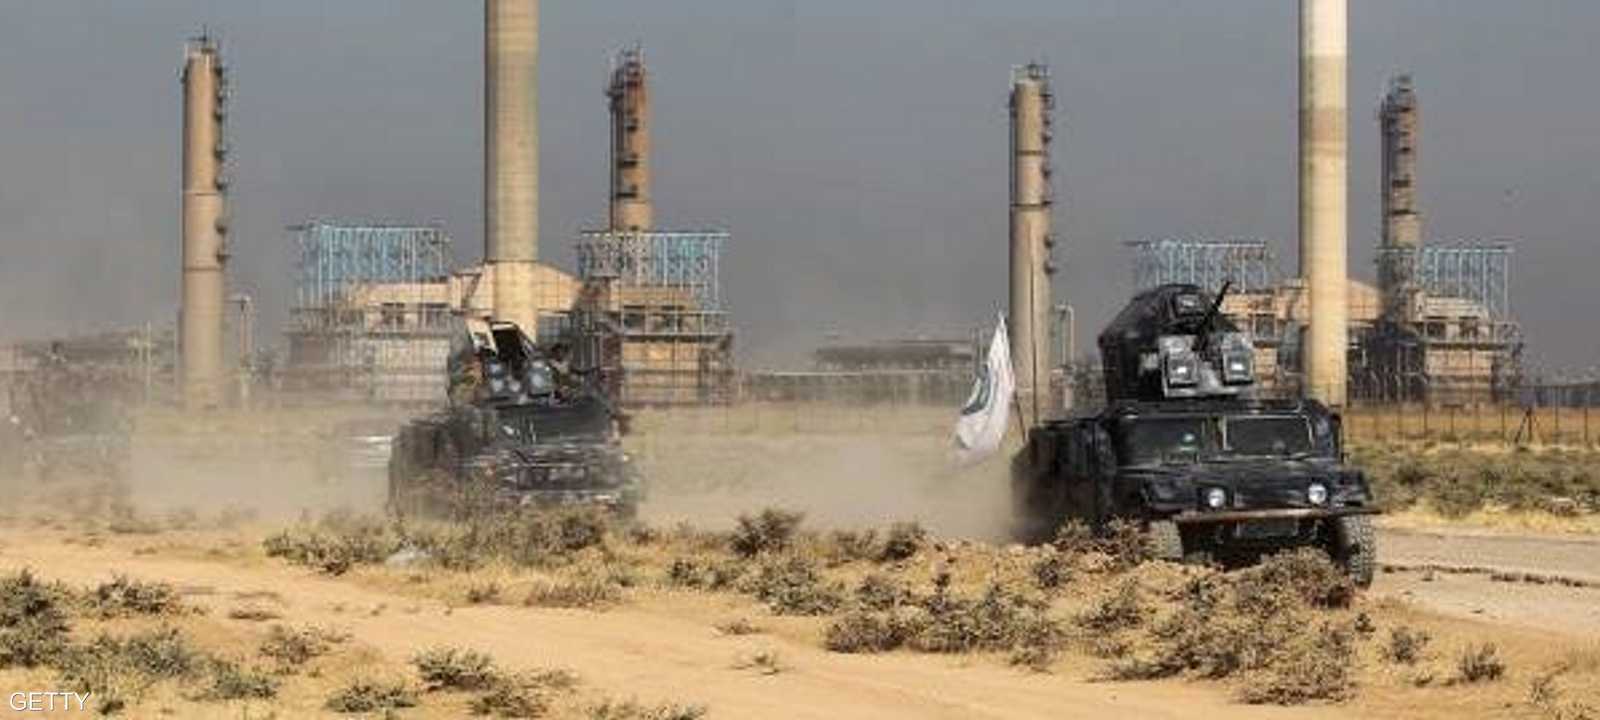 عربات عسكرية للجيش العراقي تمر أمام منشأة نفطية في كركوك.